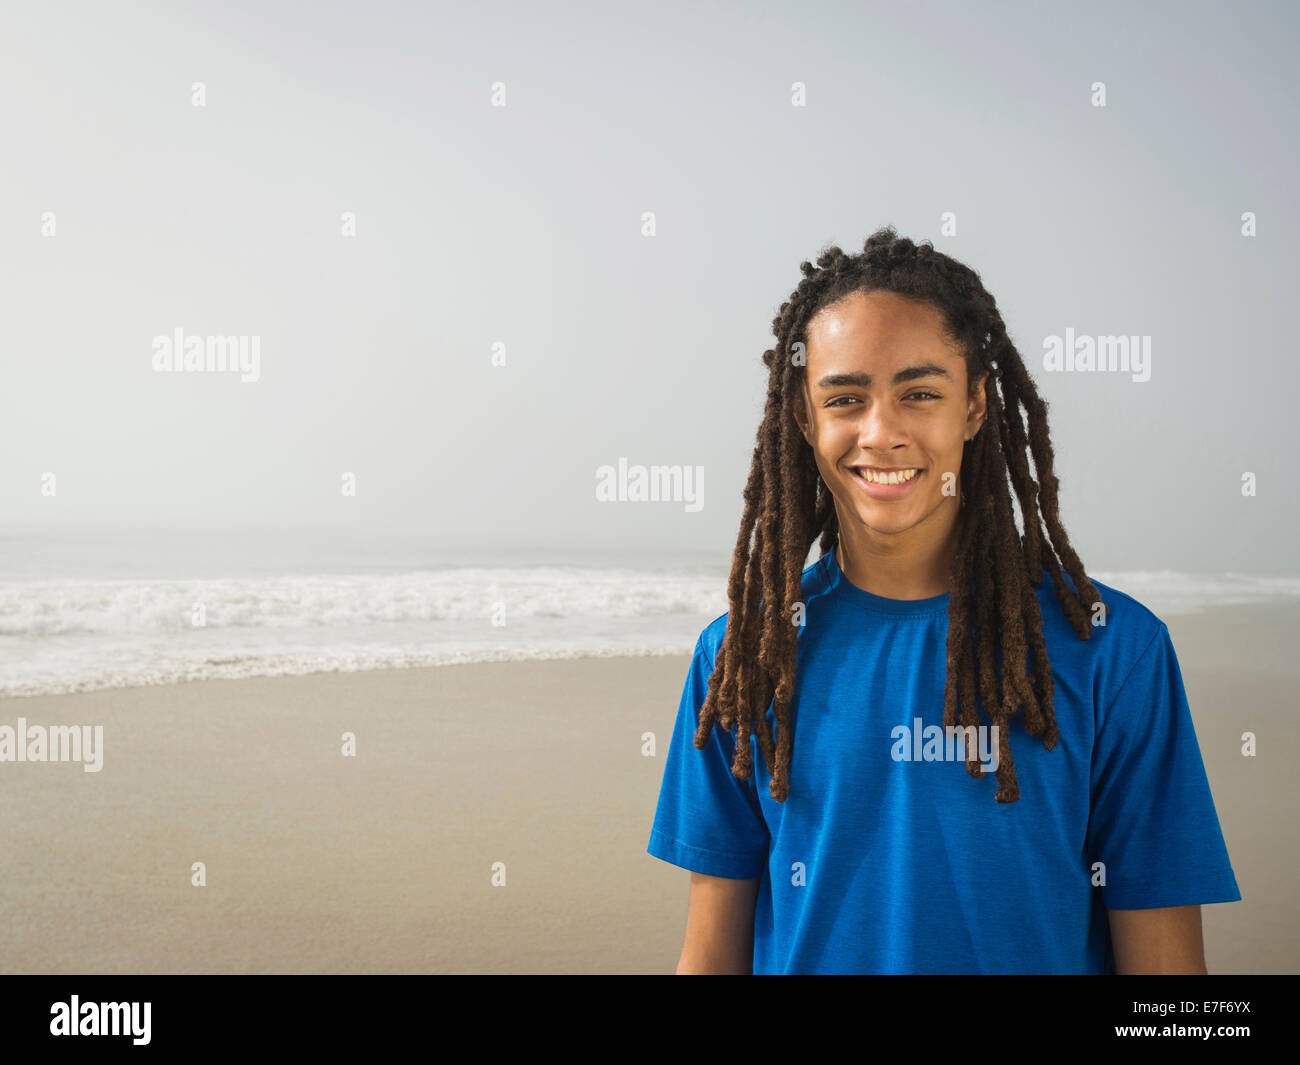 Adolescente negro sonriente en la playa Foto de stock